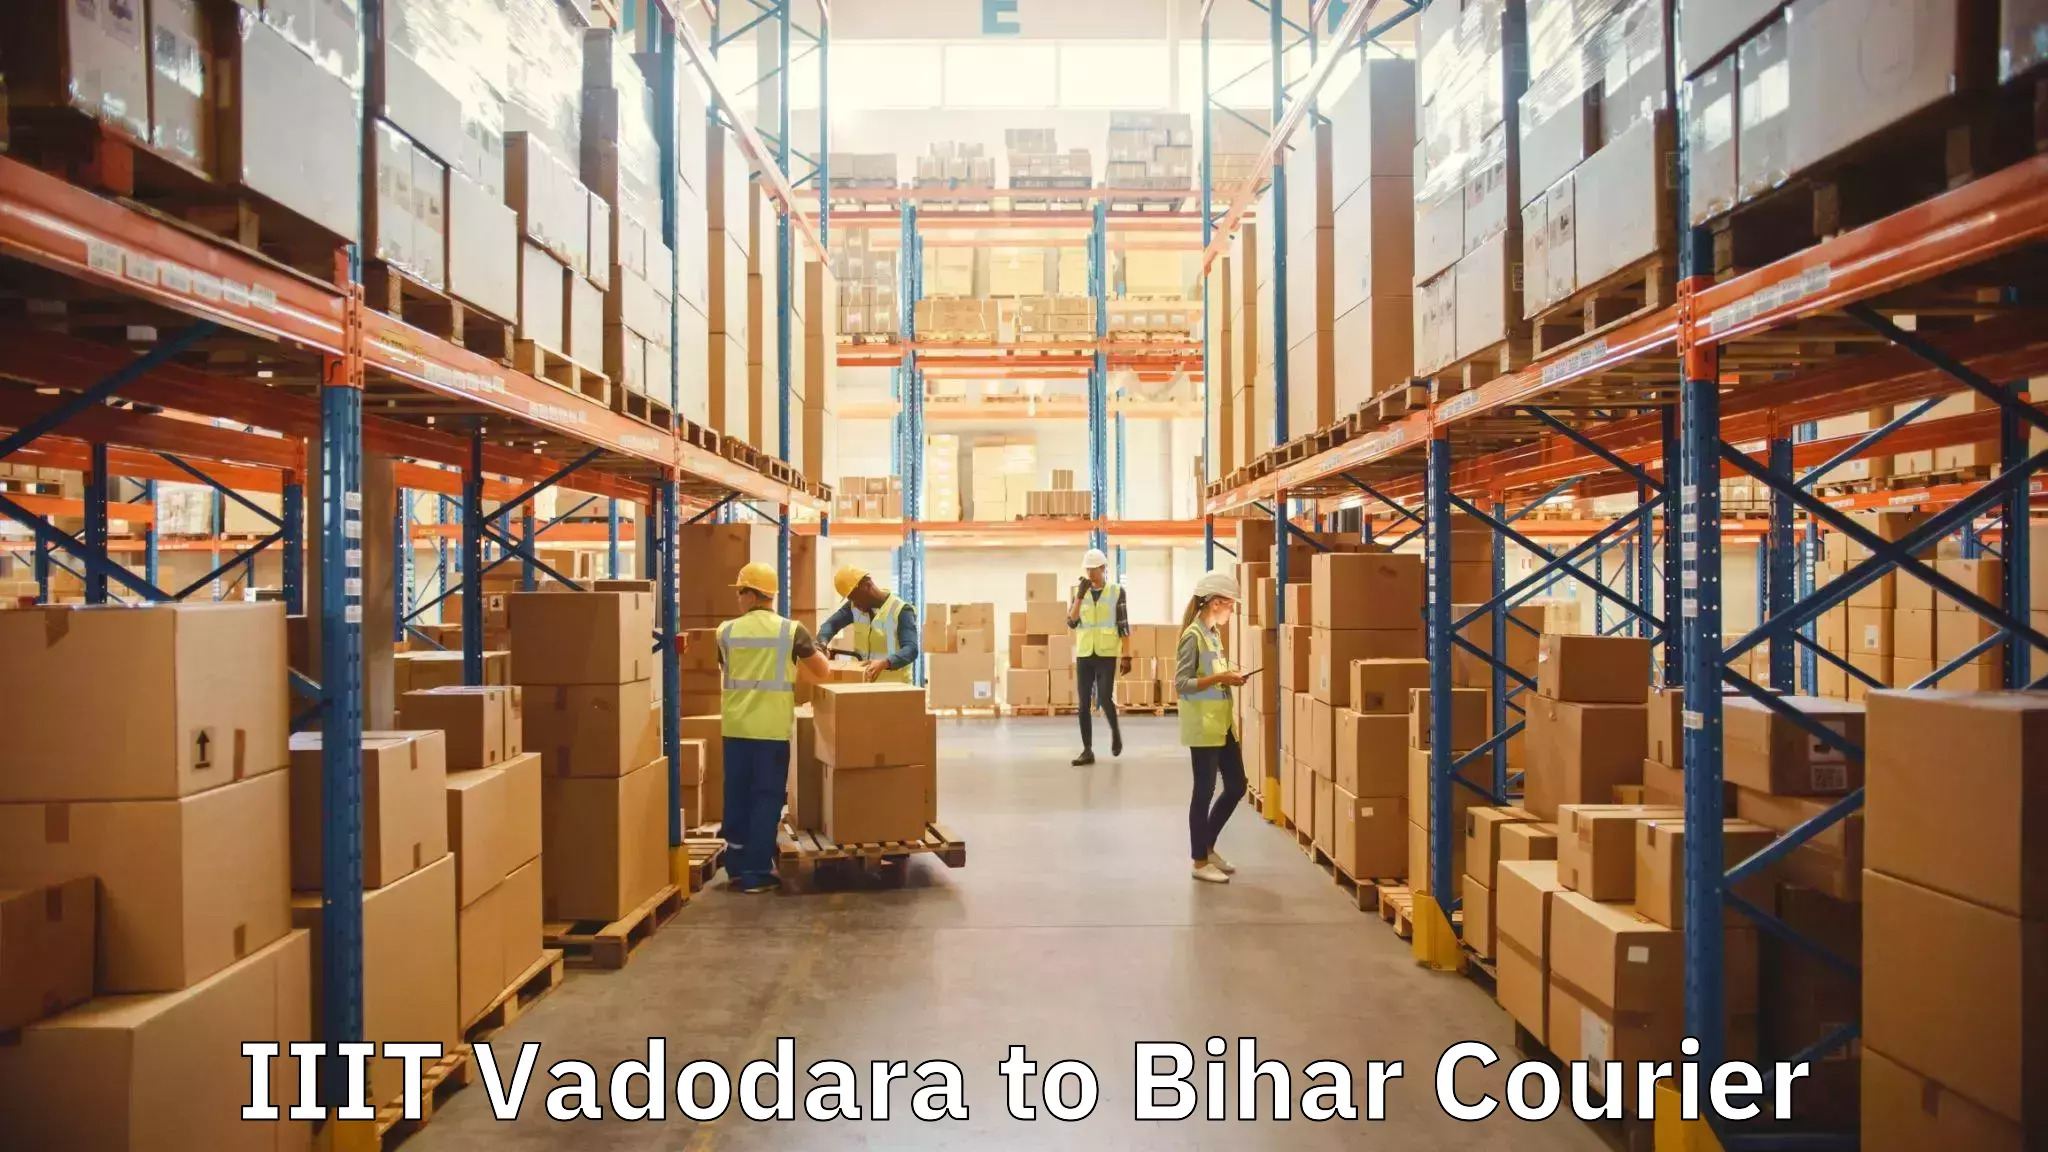 Furniture transport solutions IIIT Vadodara to Bihar